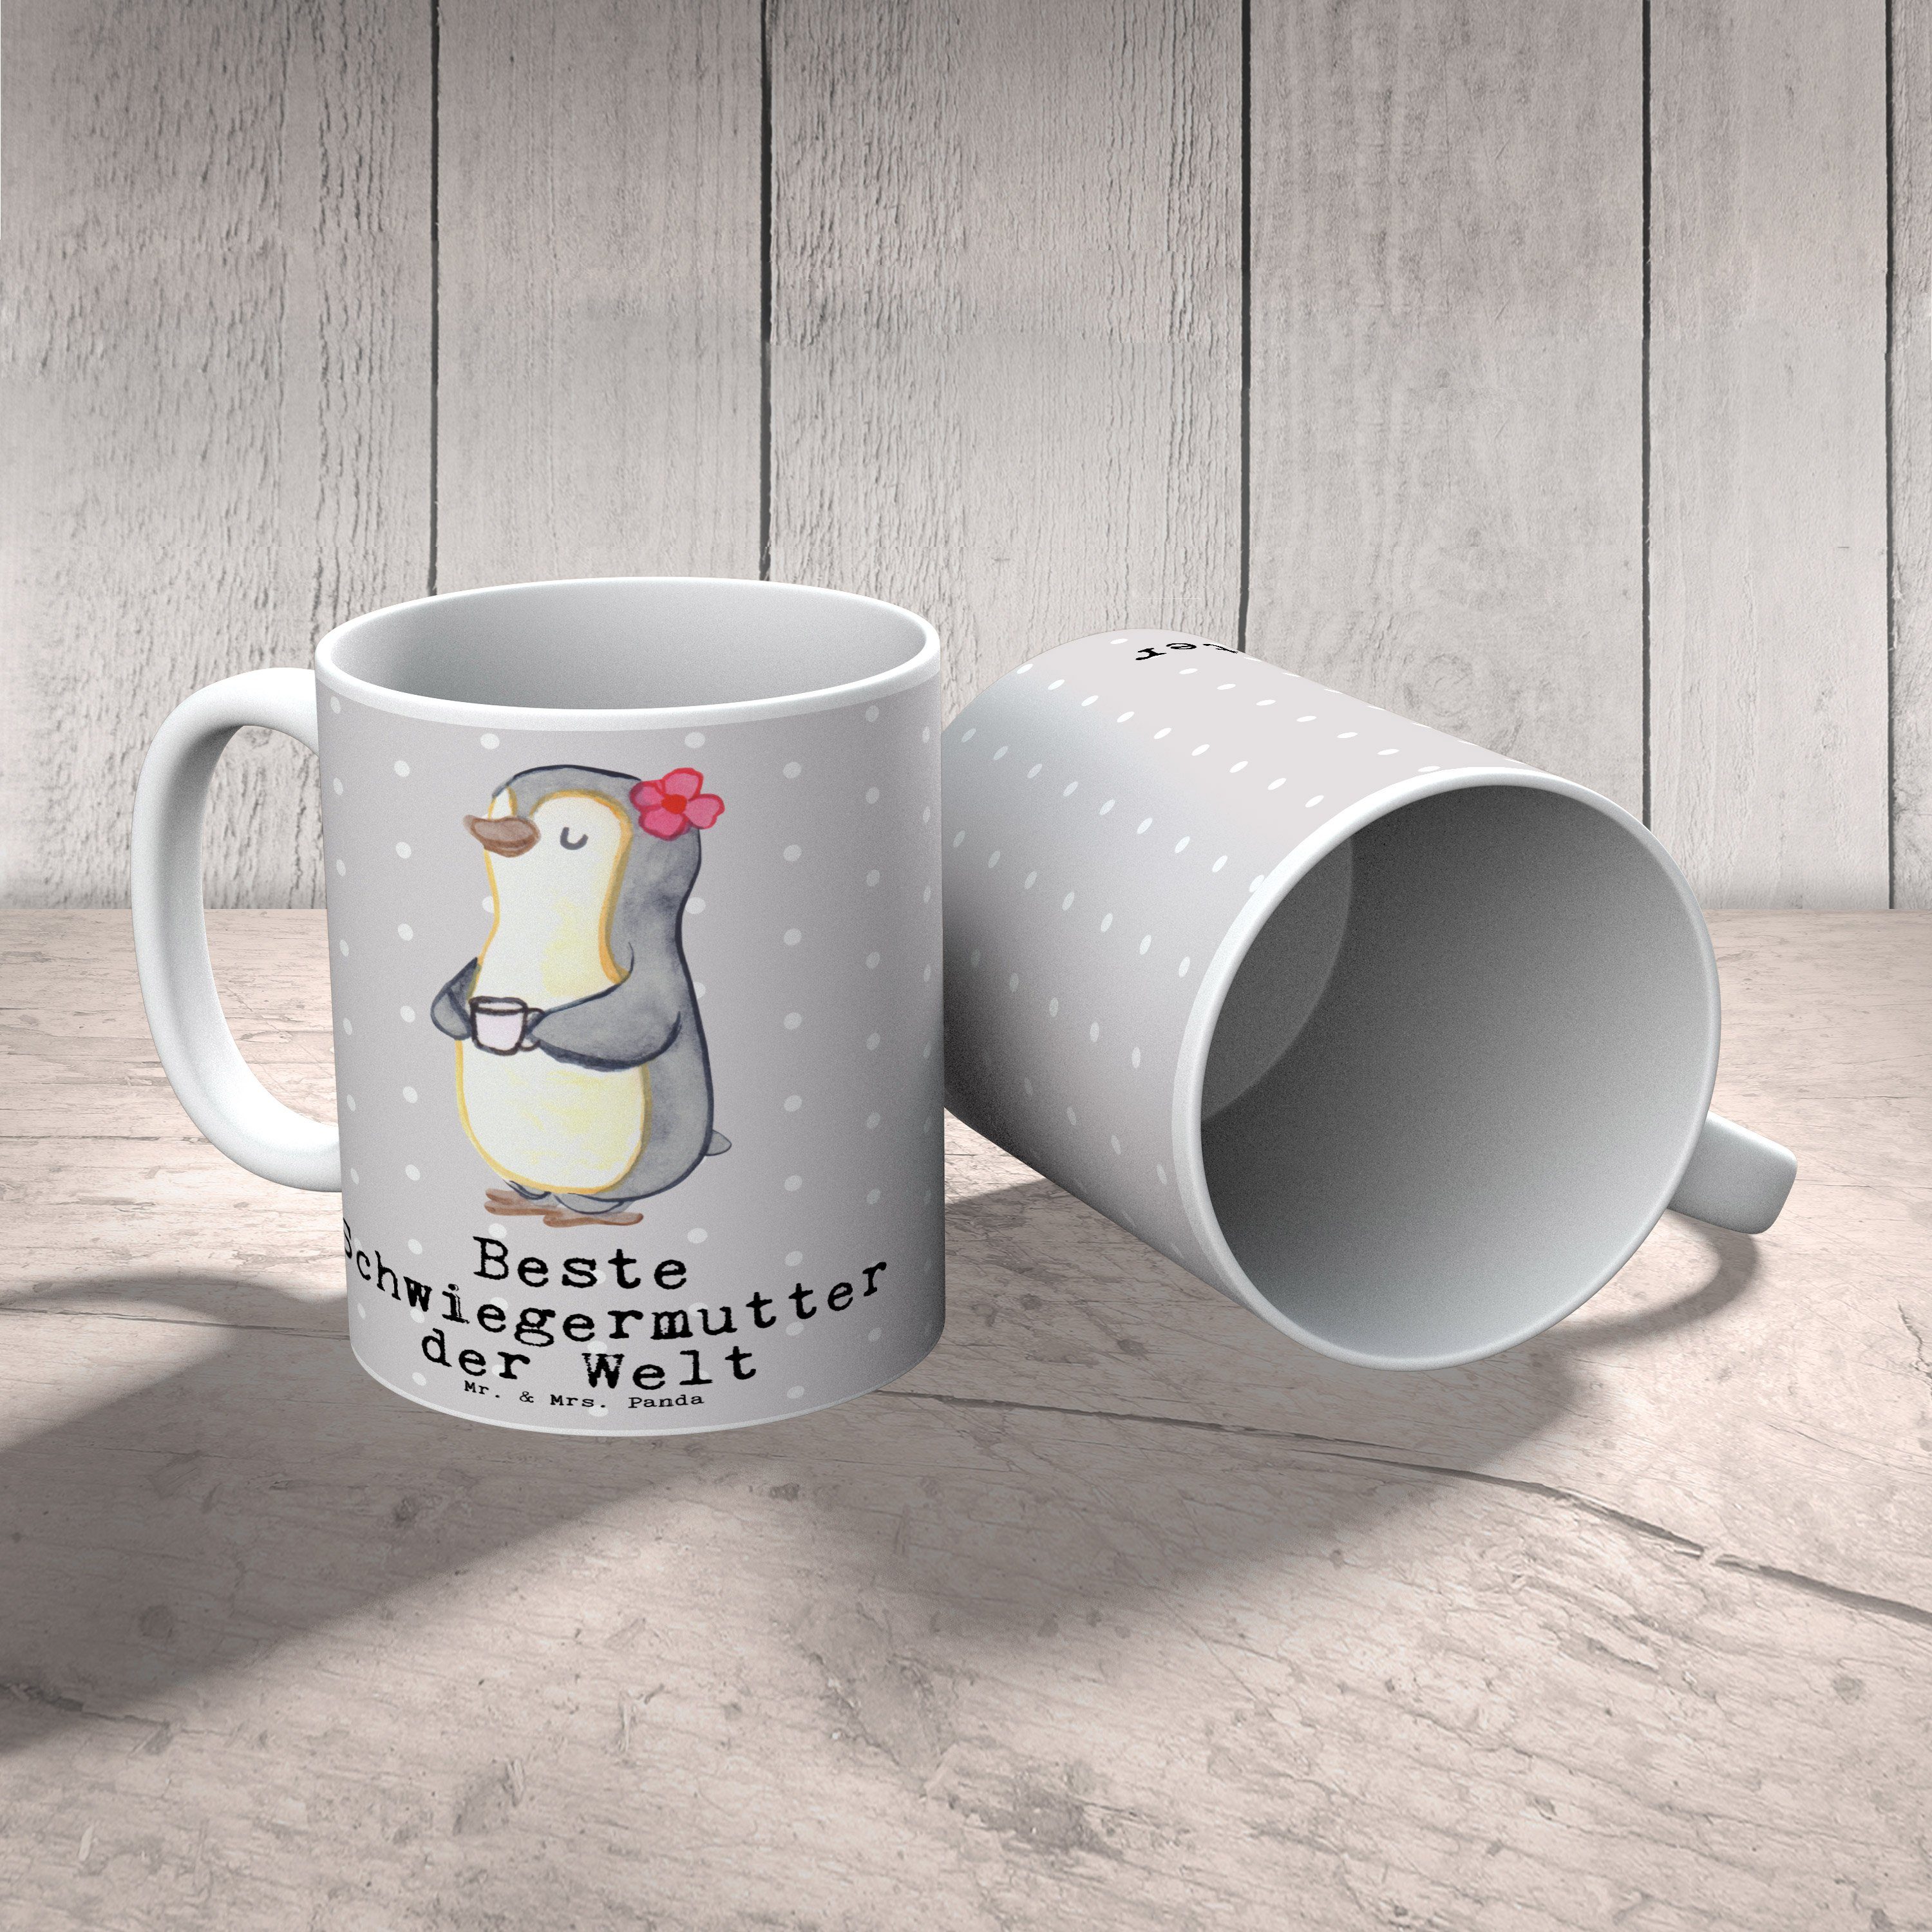 Keramik Kaf, Mrs. Grau Geschenk, - Beste Pastell Schwiegermutter & - Tasse Panda Pinguin Mr. der Welt